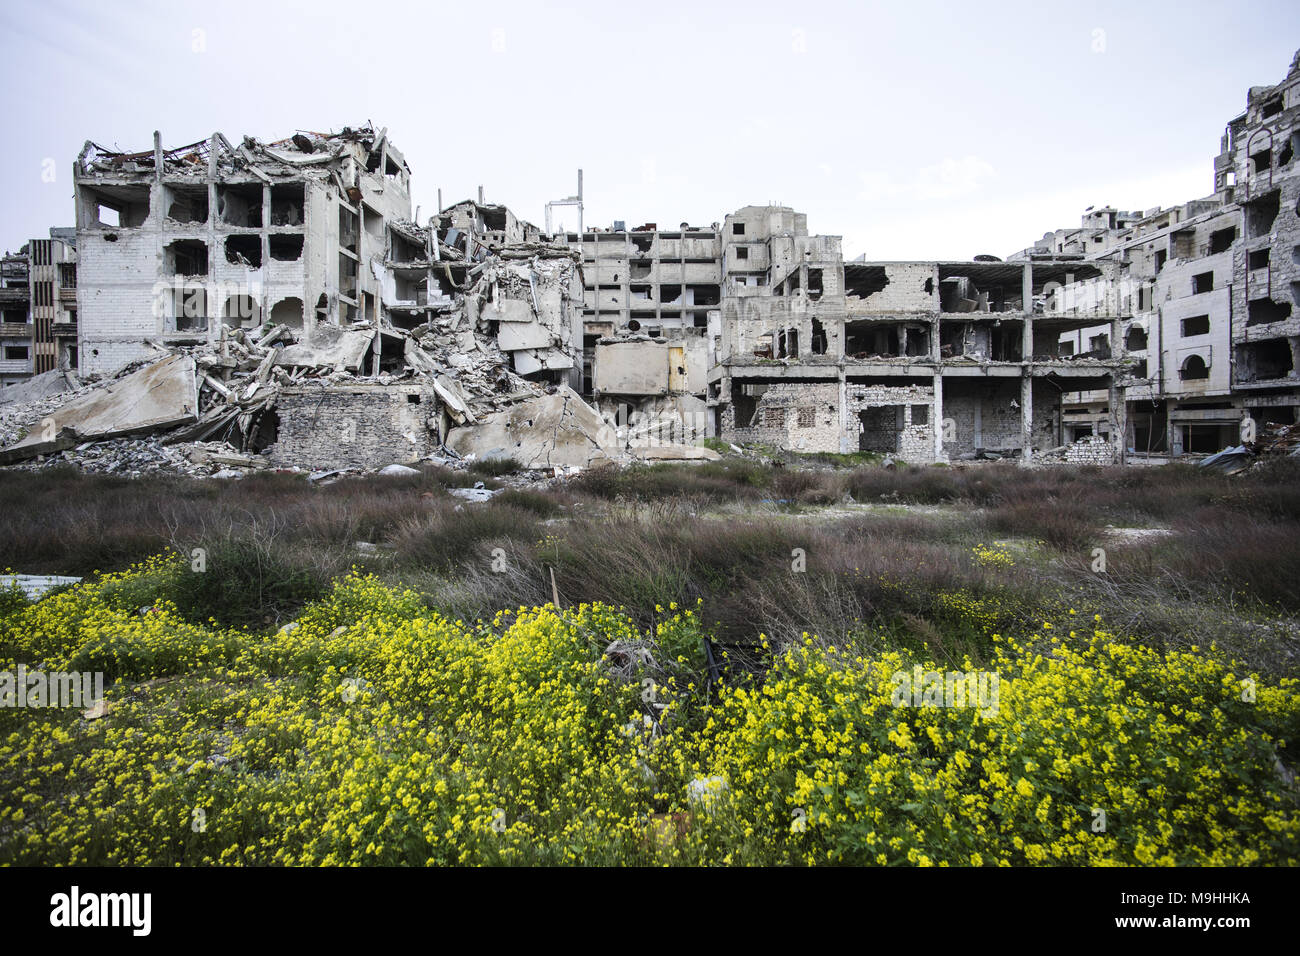 La ville de Homs en syrie Banque D'Images